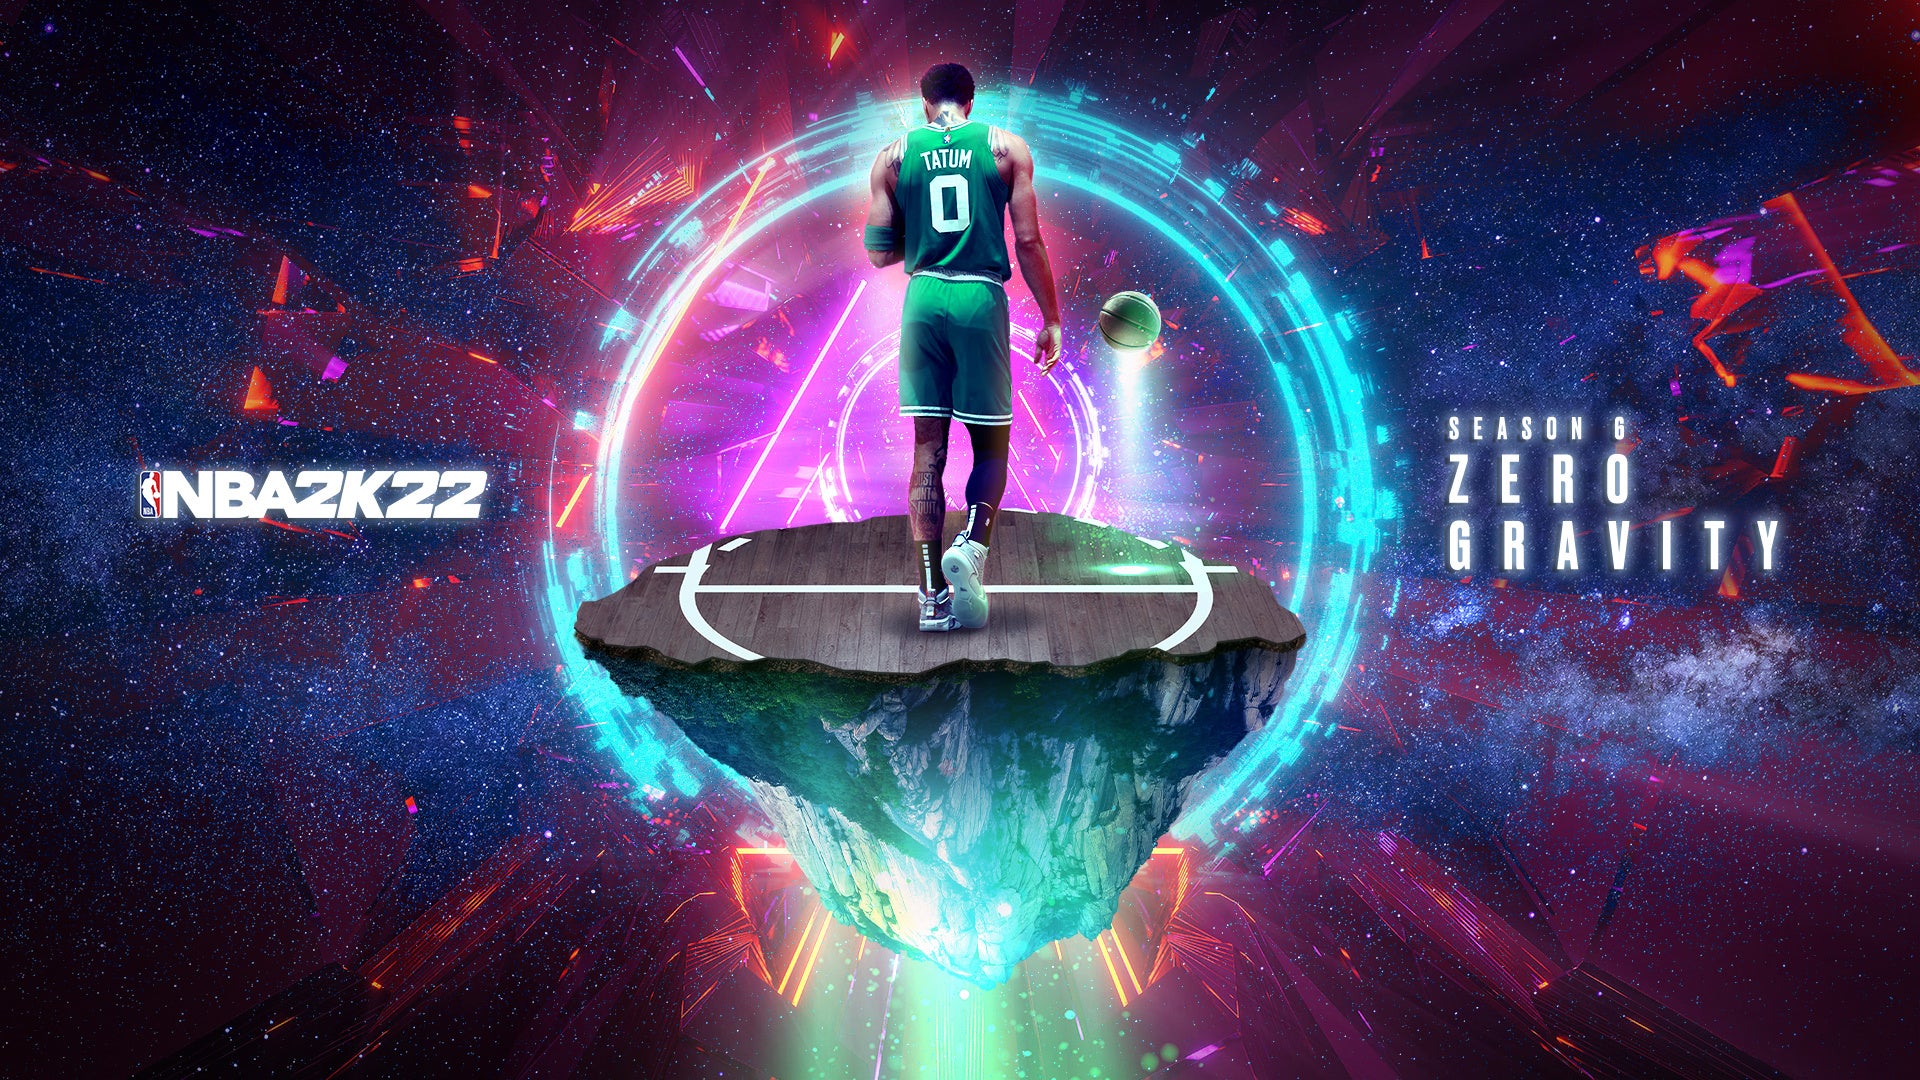 『NBA® 2K22 』シーズン6「ゼロ・グラビティ」4月9日（土）配信開始